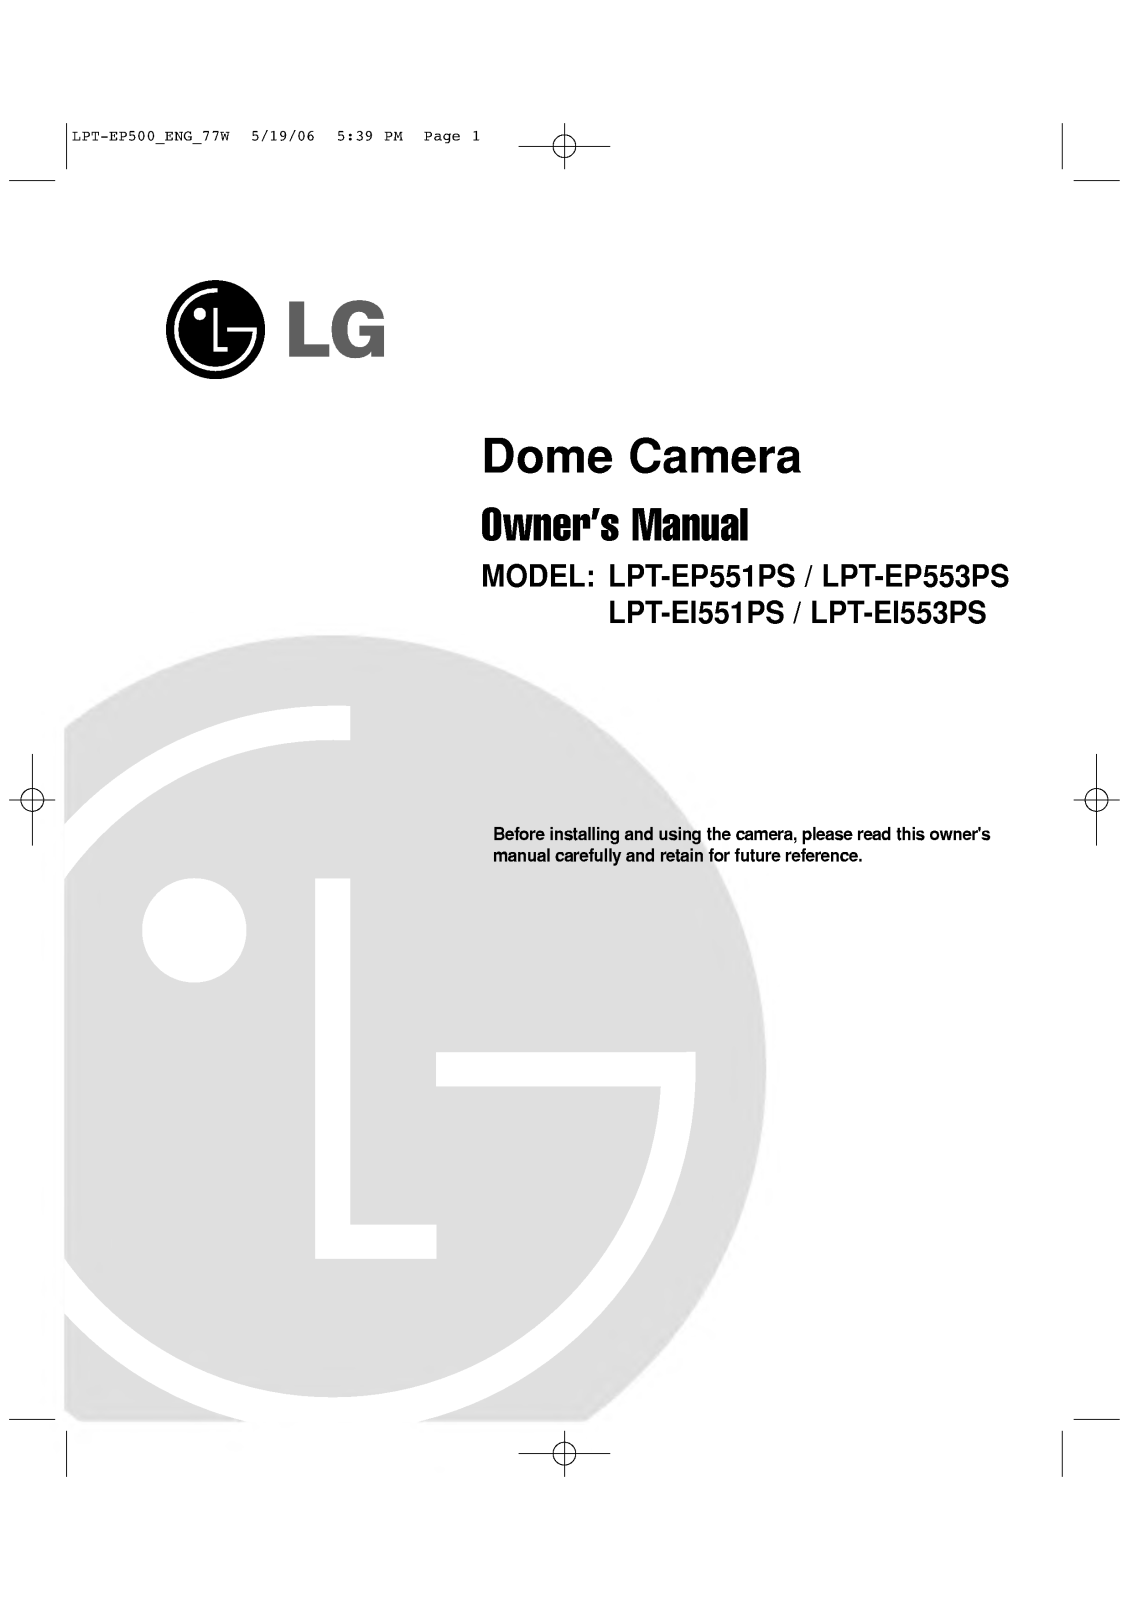 LG LPT-EP553PS User Manual